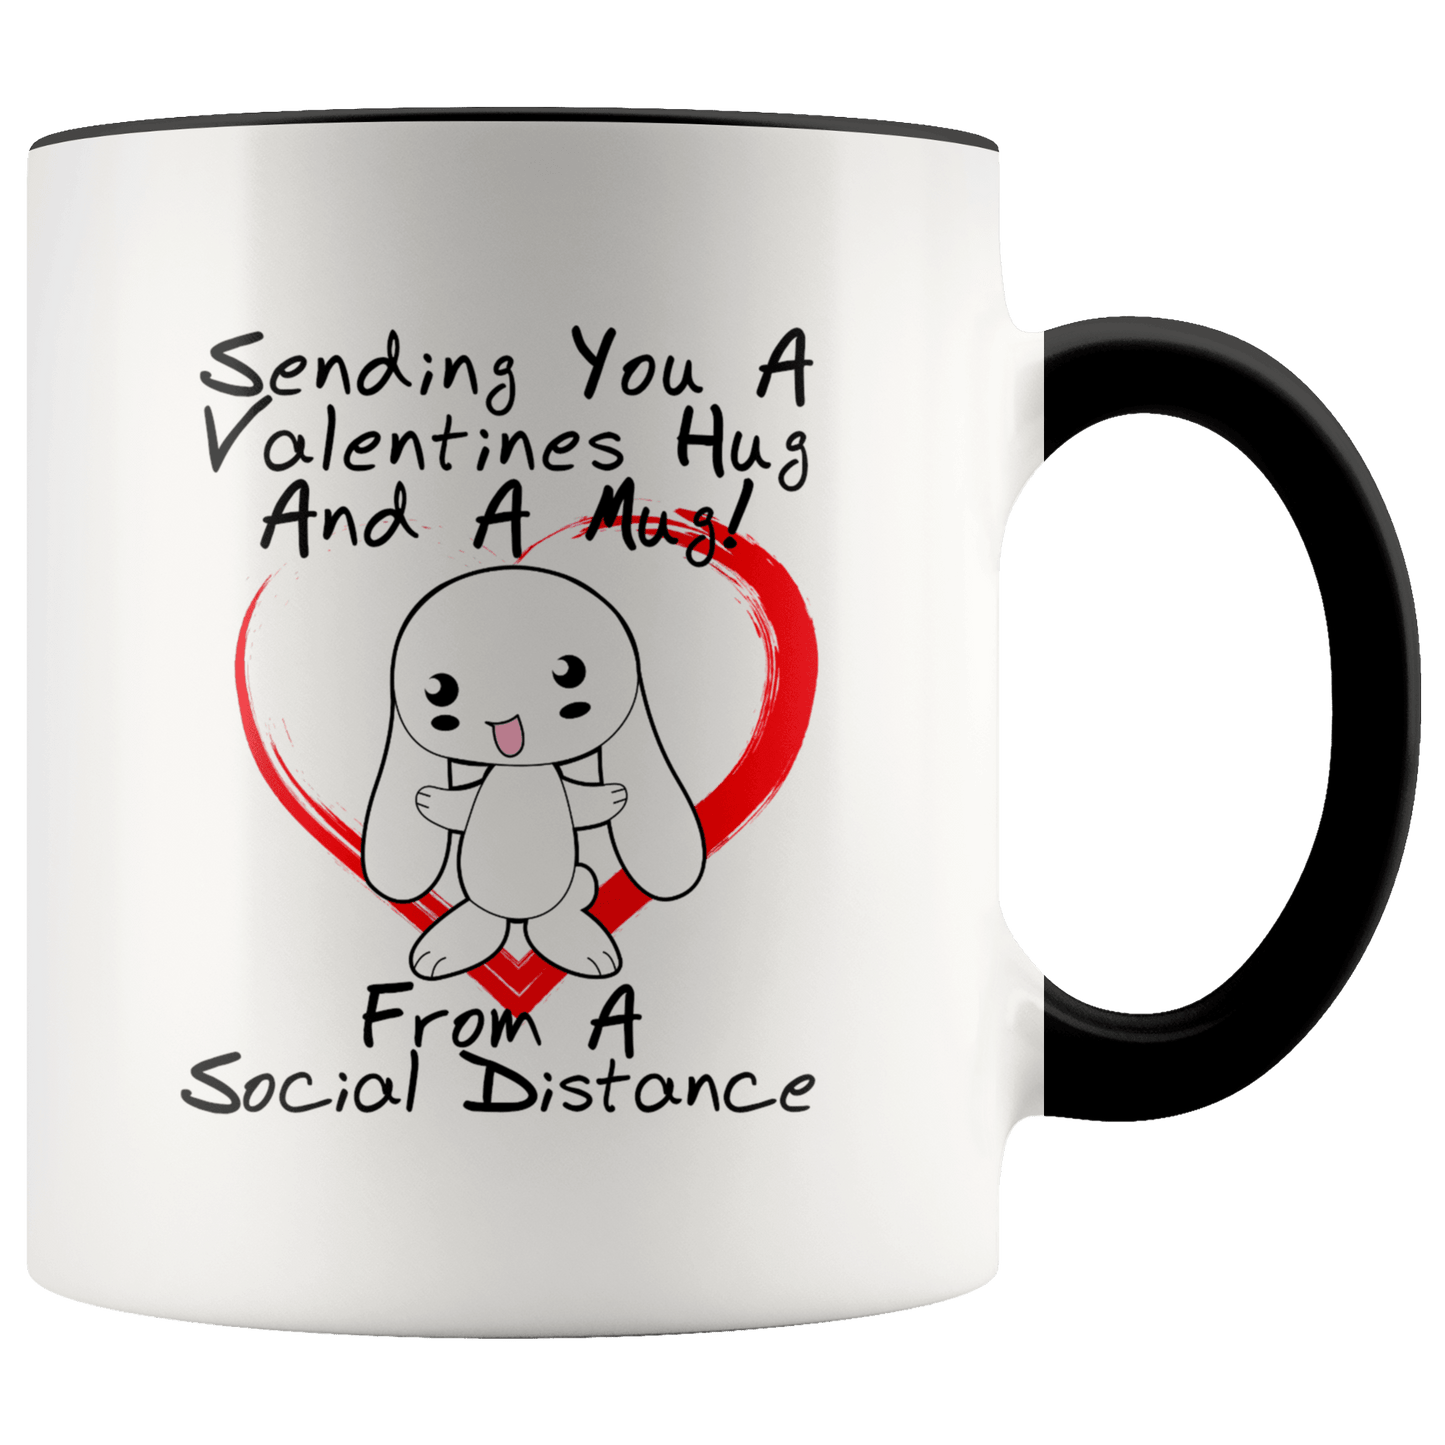 Social Distance Valentines Hug Mug - Giftagic